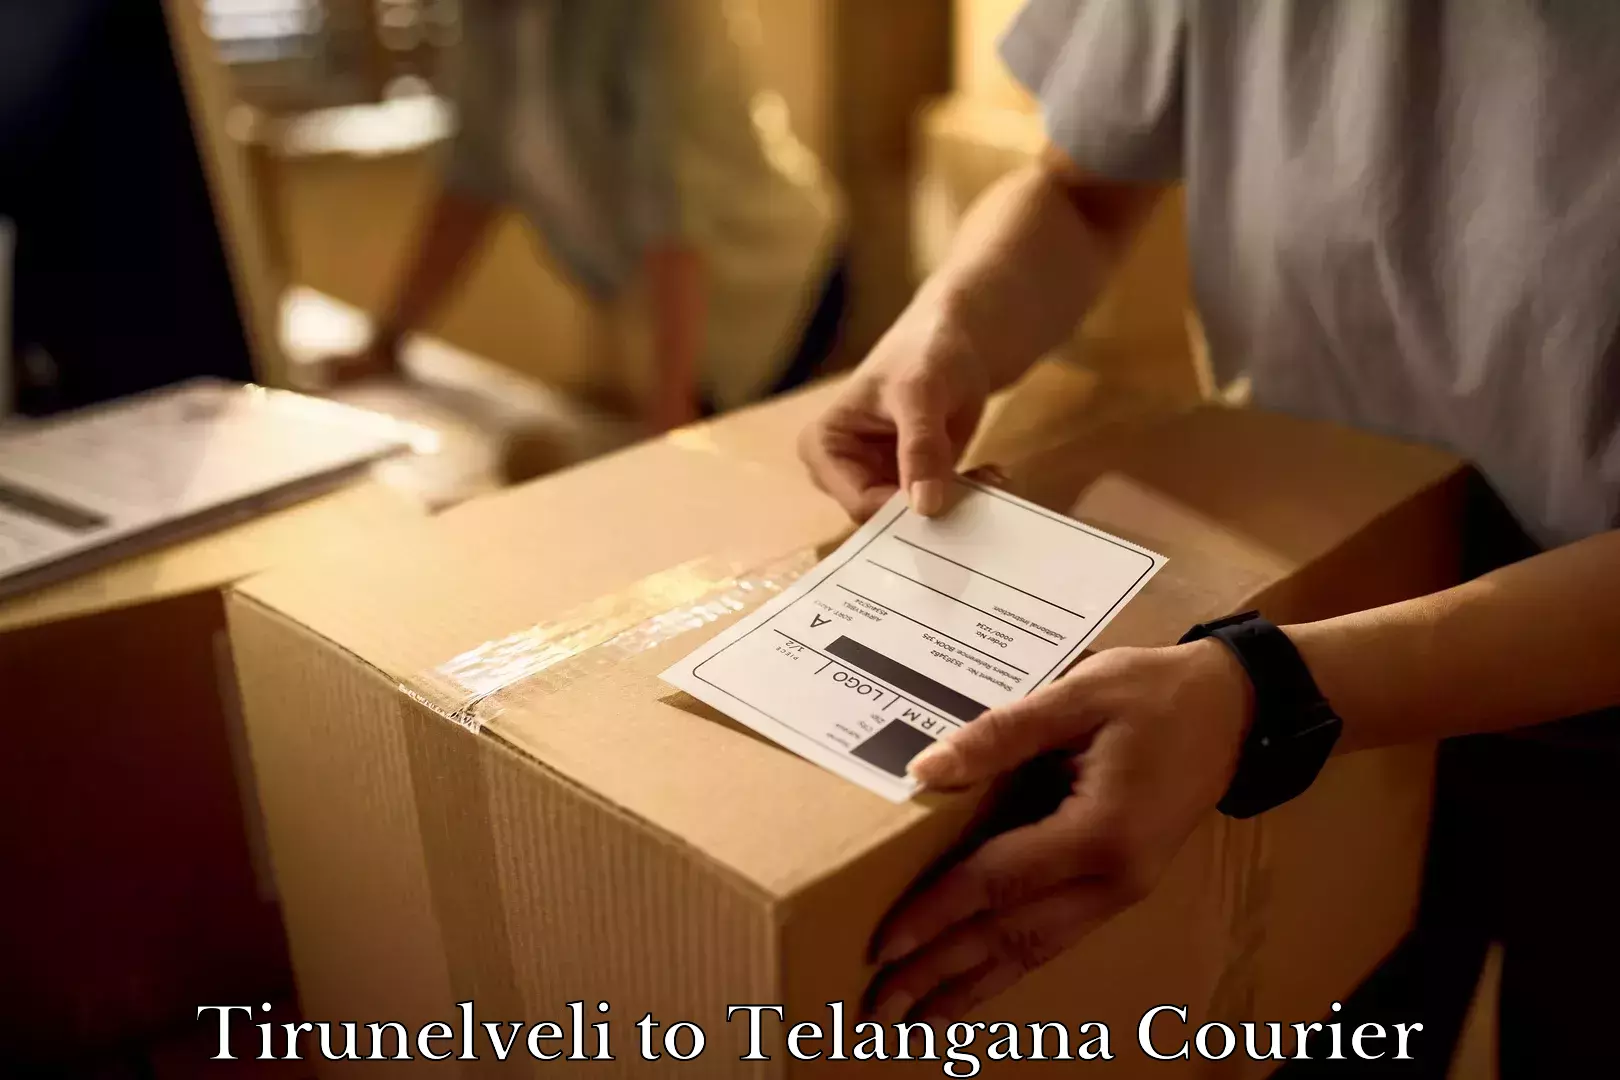 Efficient packing and moving Tirunelveli to Madhavaram